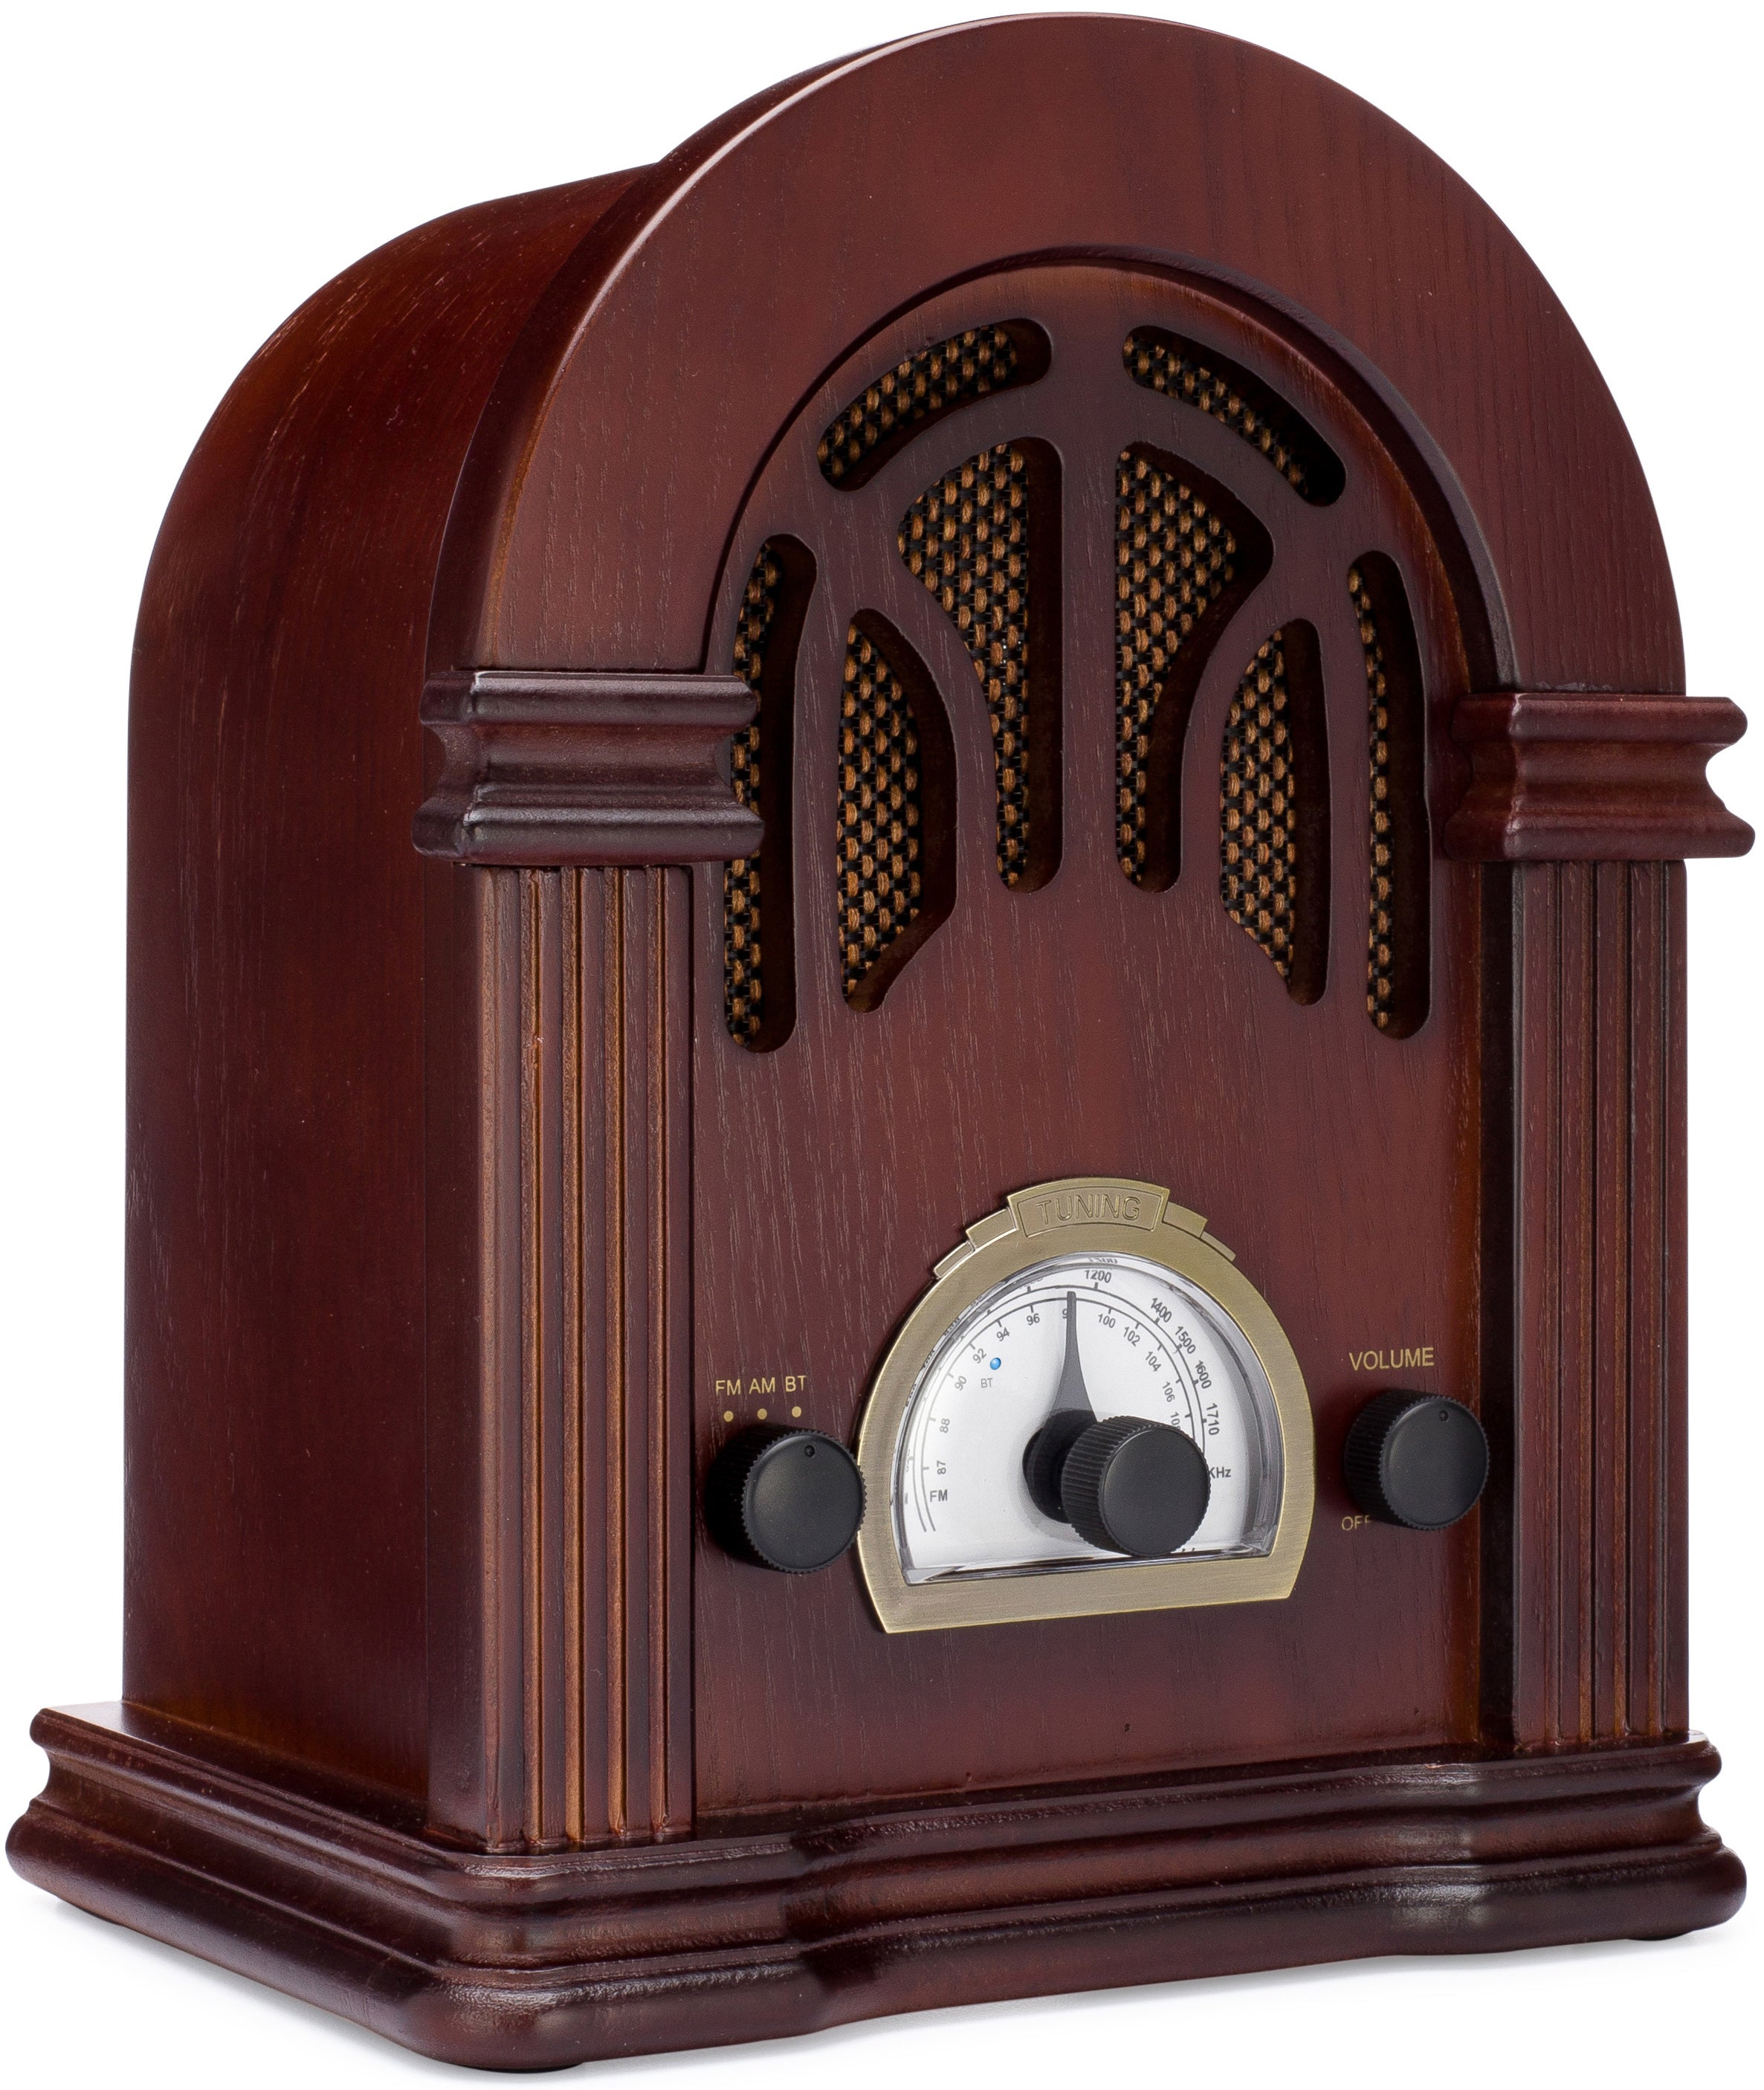 ClearClick Radio AM/FM de estilo retro clásico vintage con Bluetooth,  entrada auxiliar y USB, exterior de madera hecha a mano, marrón oscuro,  Marrón